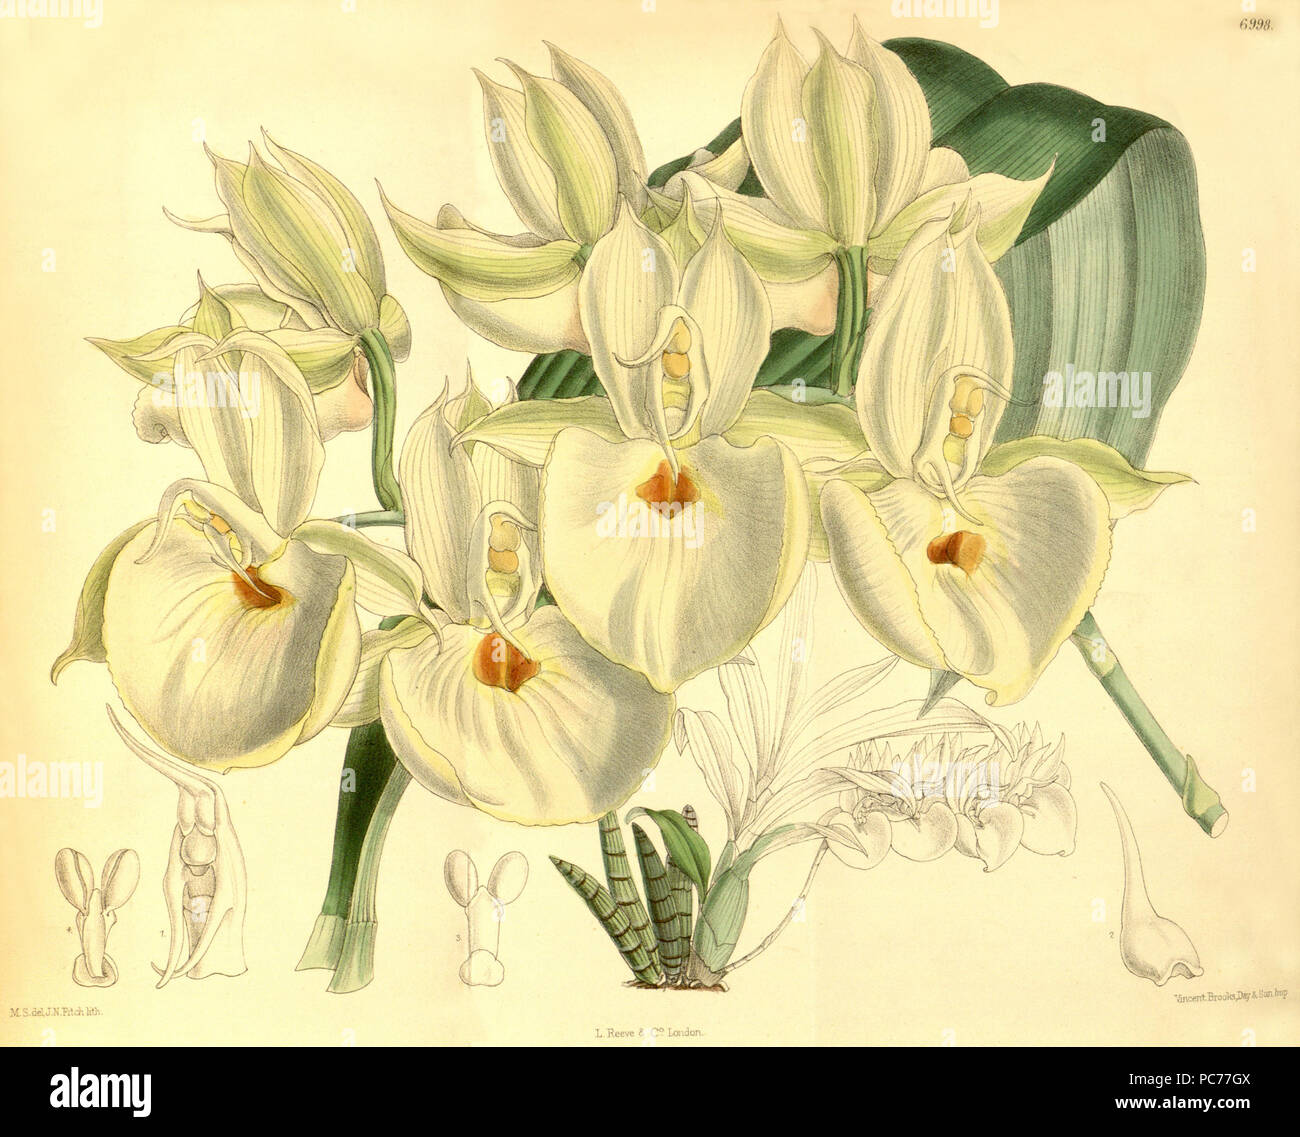 118 Catasetum pileatum (as Catasetum bungerothii) - Curtis' 114 (Ser. 3 no. 44) pl. 6998 (1888) Stock Photo